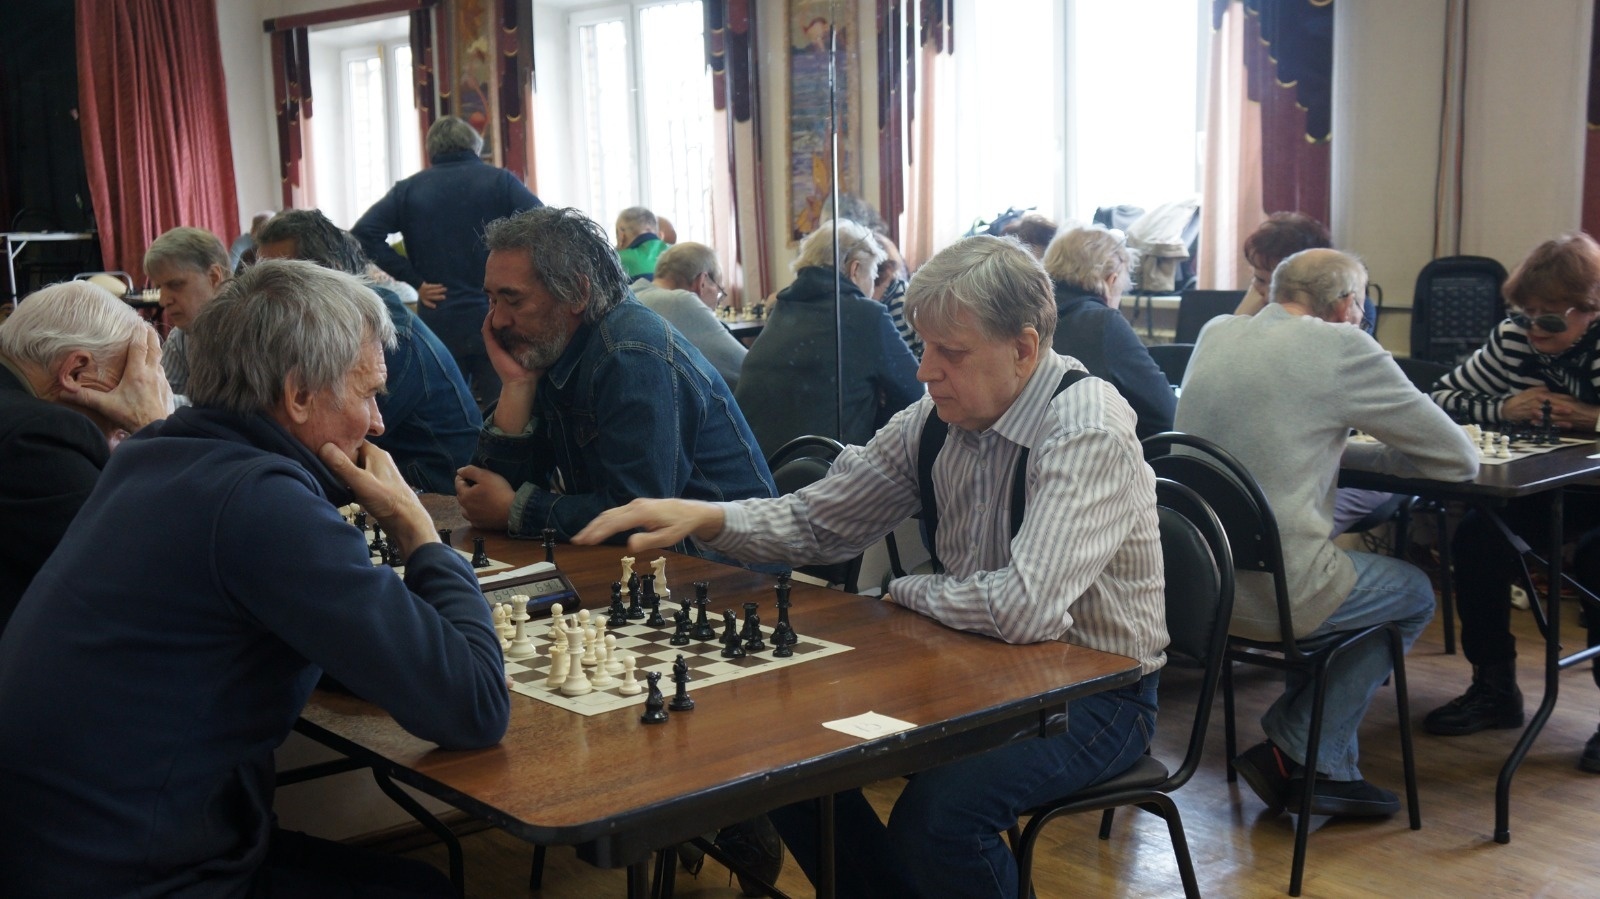 Окружной шахматный турнир состоялся в ДСЦ «Мир Молодых». Фото: официальная страница ДСЦ «Мир Молодых» в социальных сетях